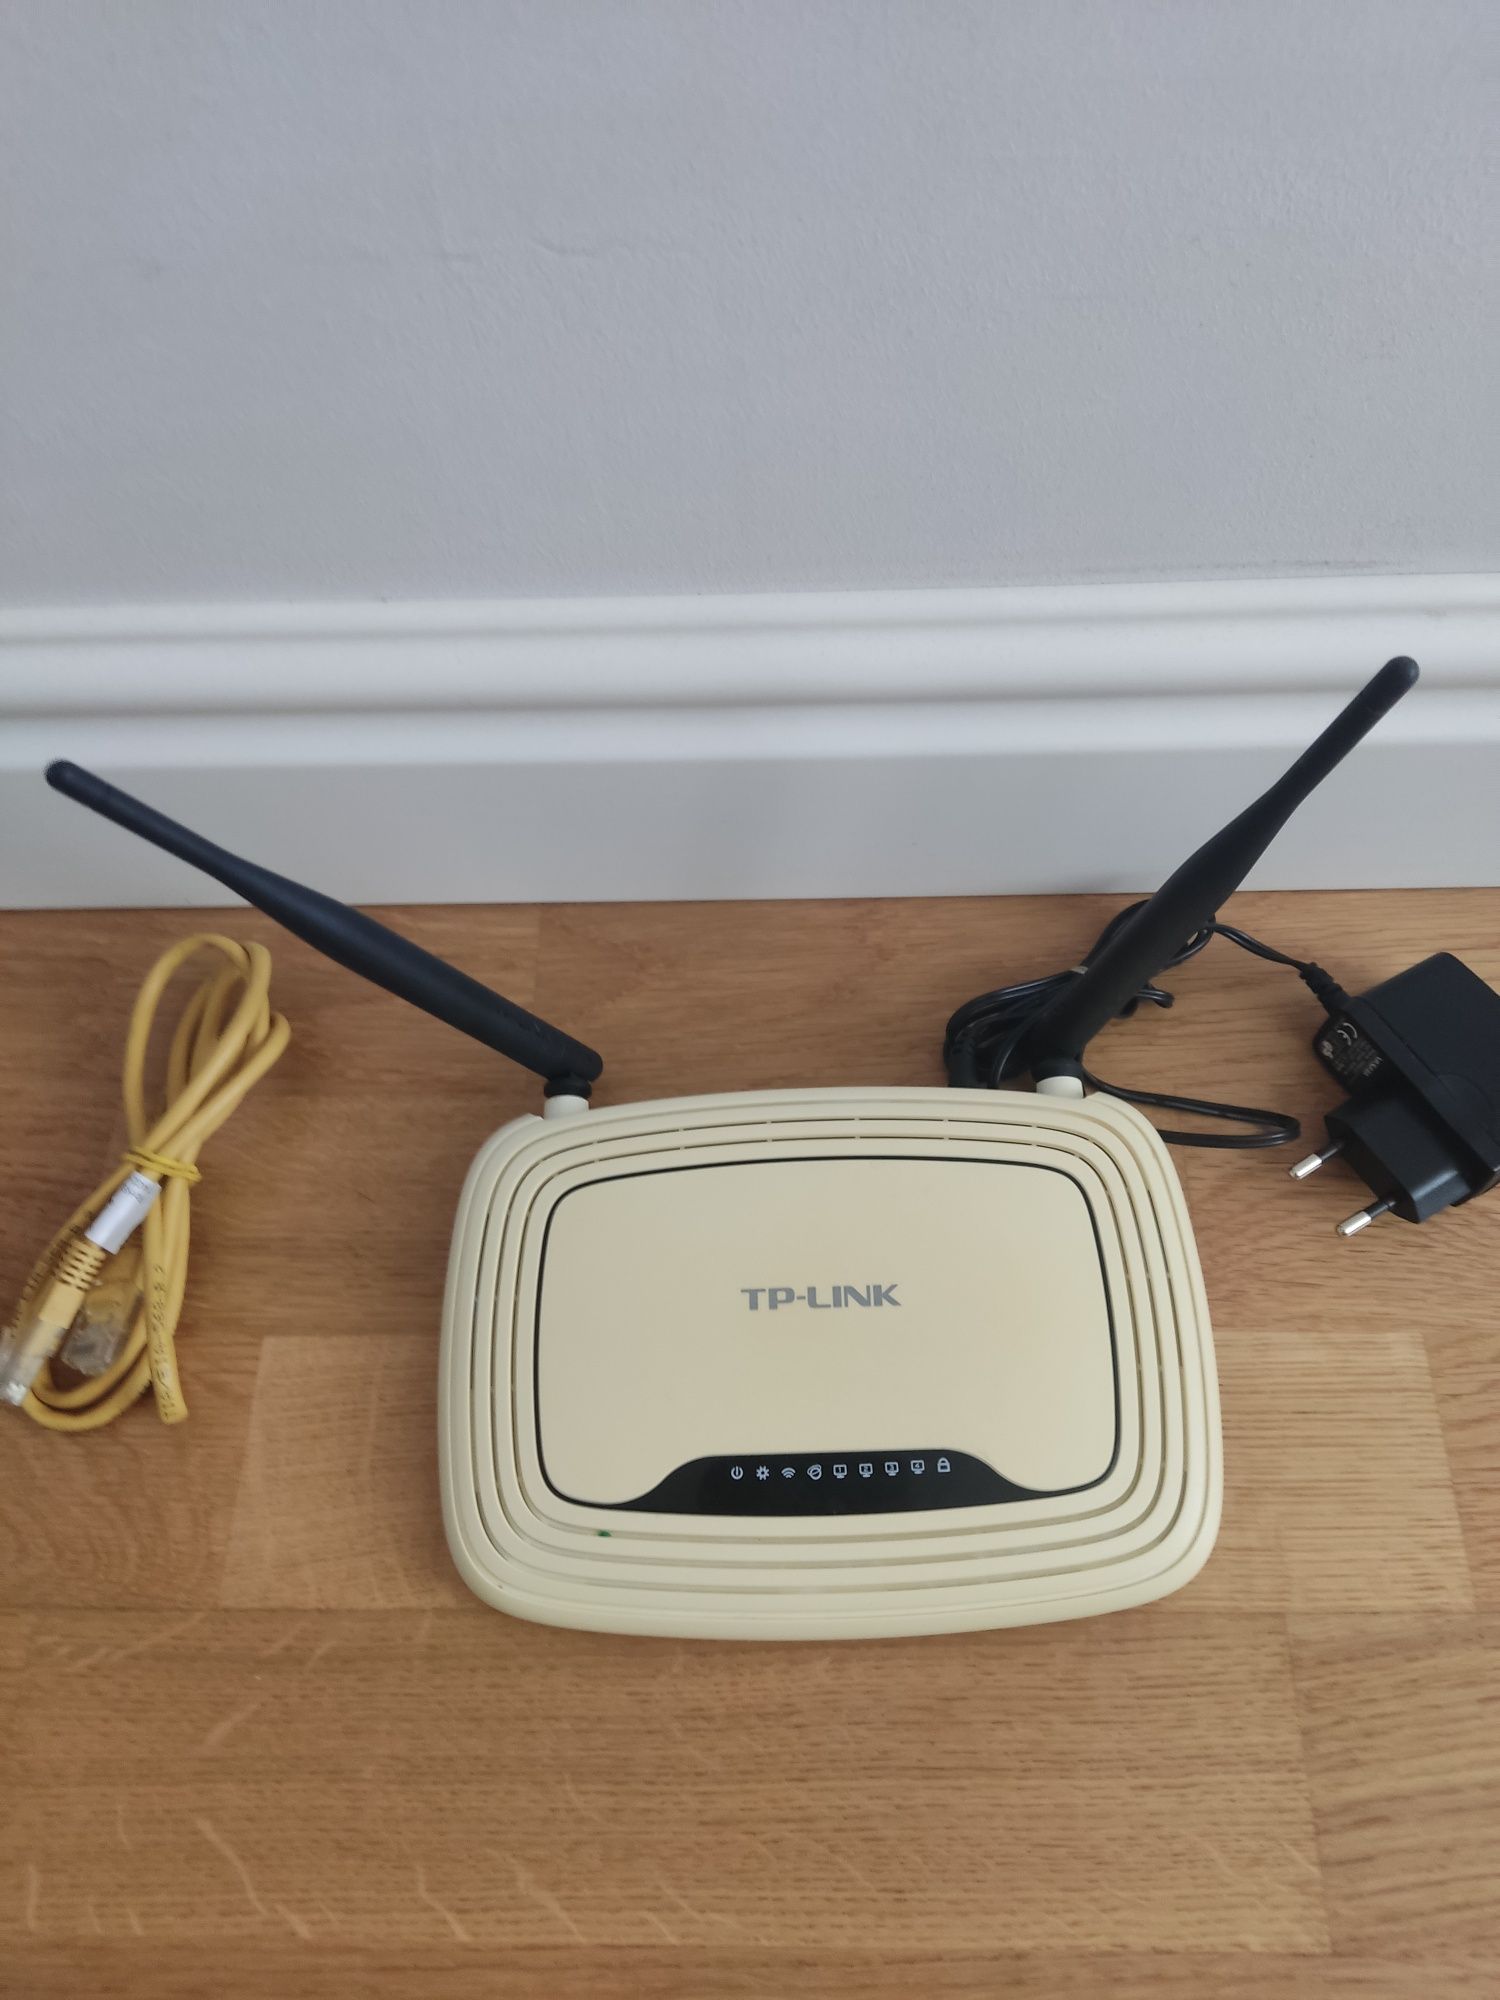 Продам WiFi роутер Tplink WR841N, 300 Мбит/с,  в рабочем состоянии